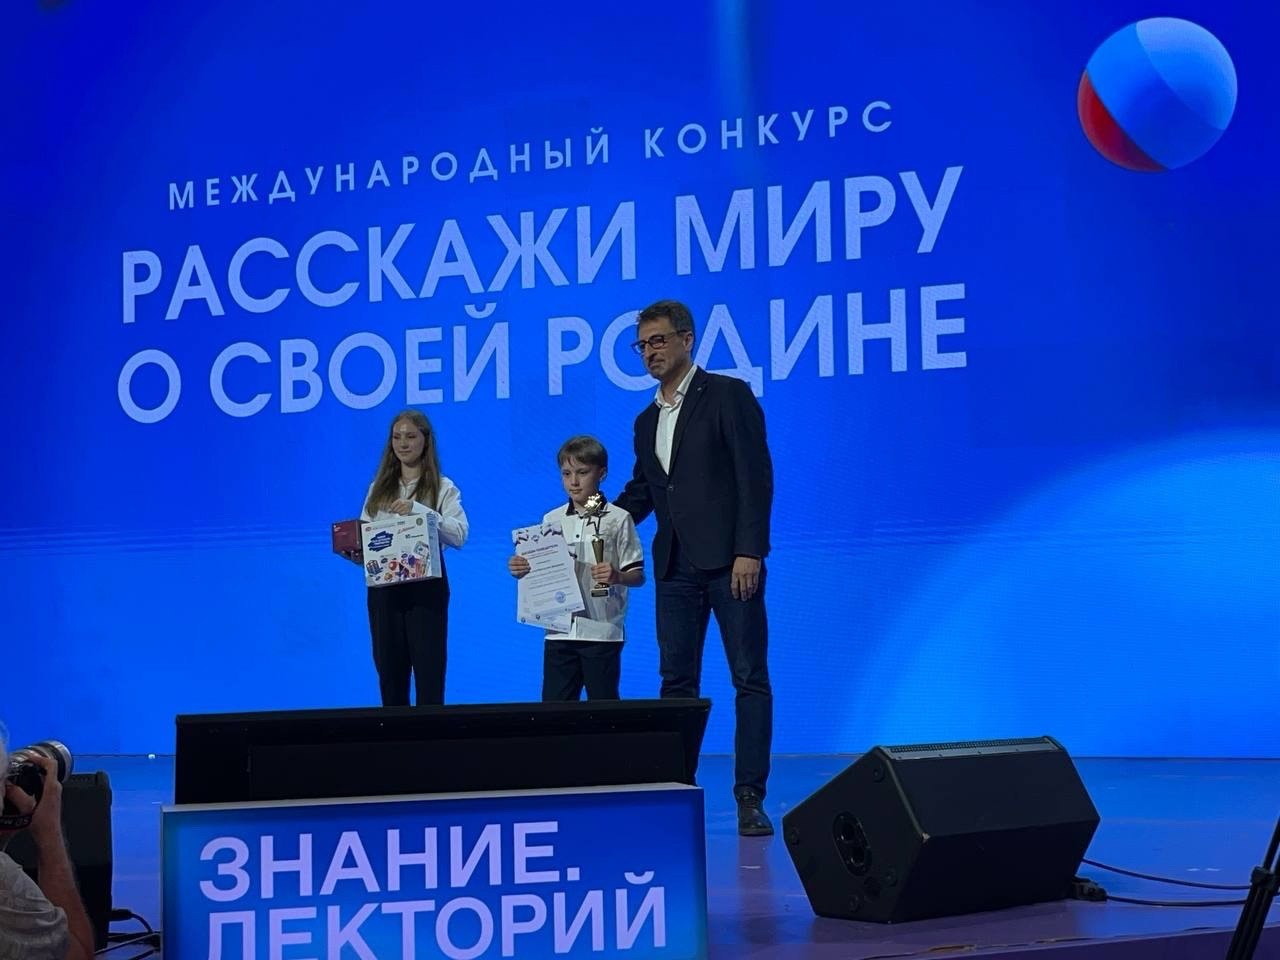 Юный ярославец победил в конкурсе «Расскажи миру о своей Родине»